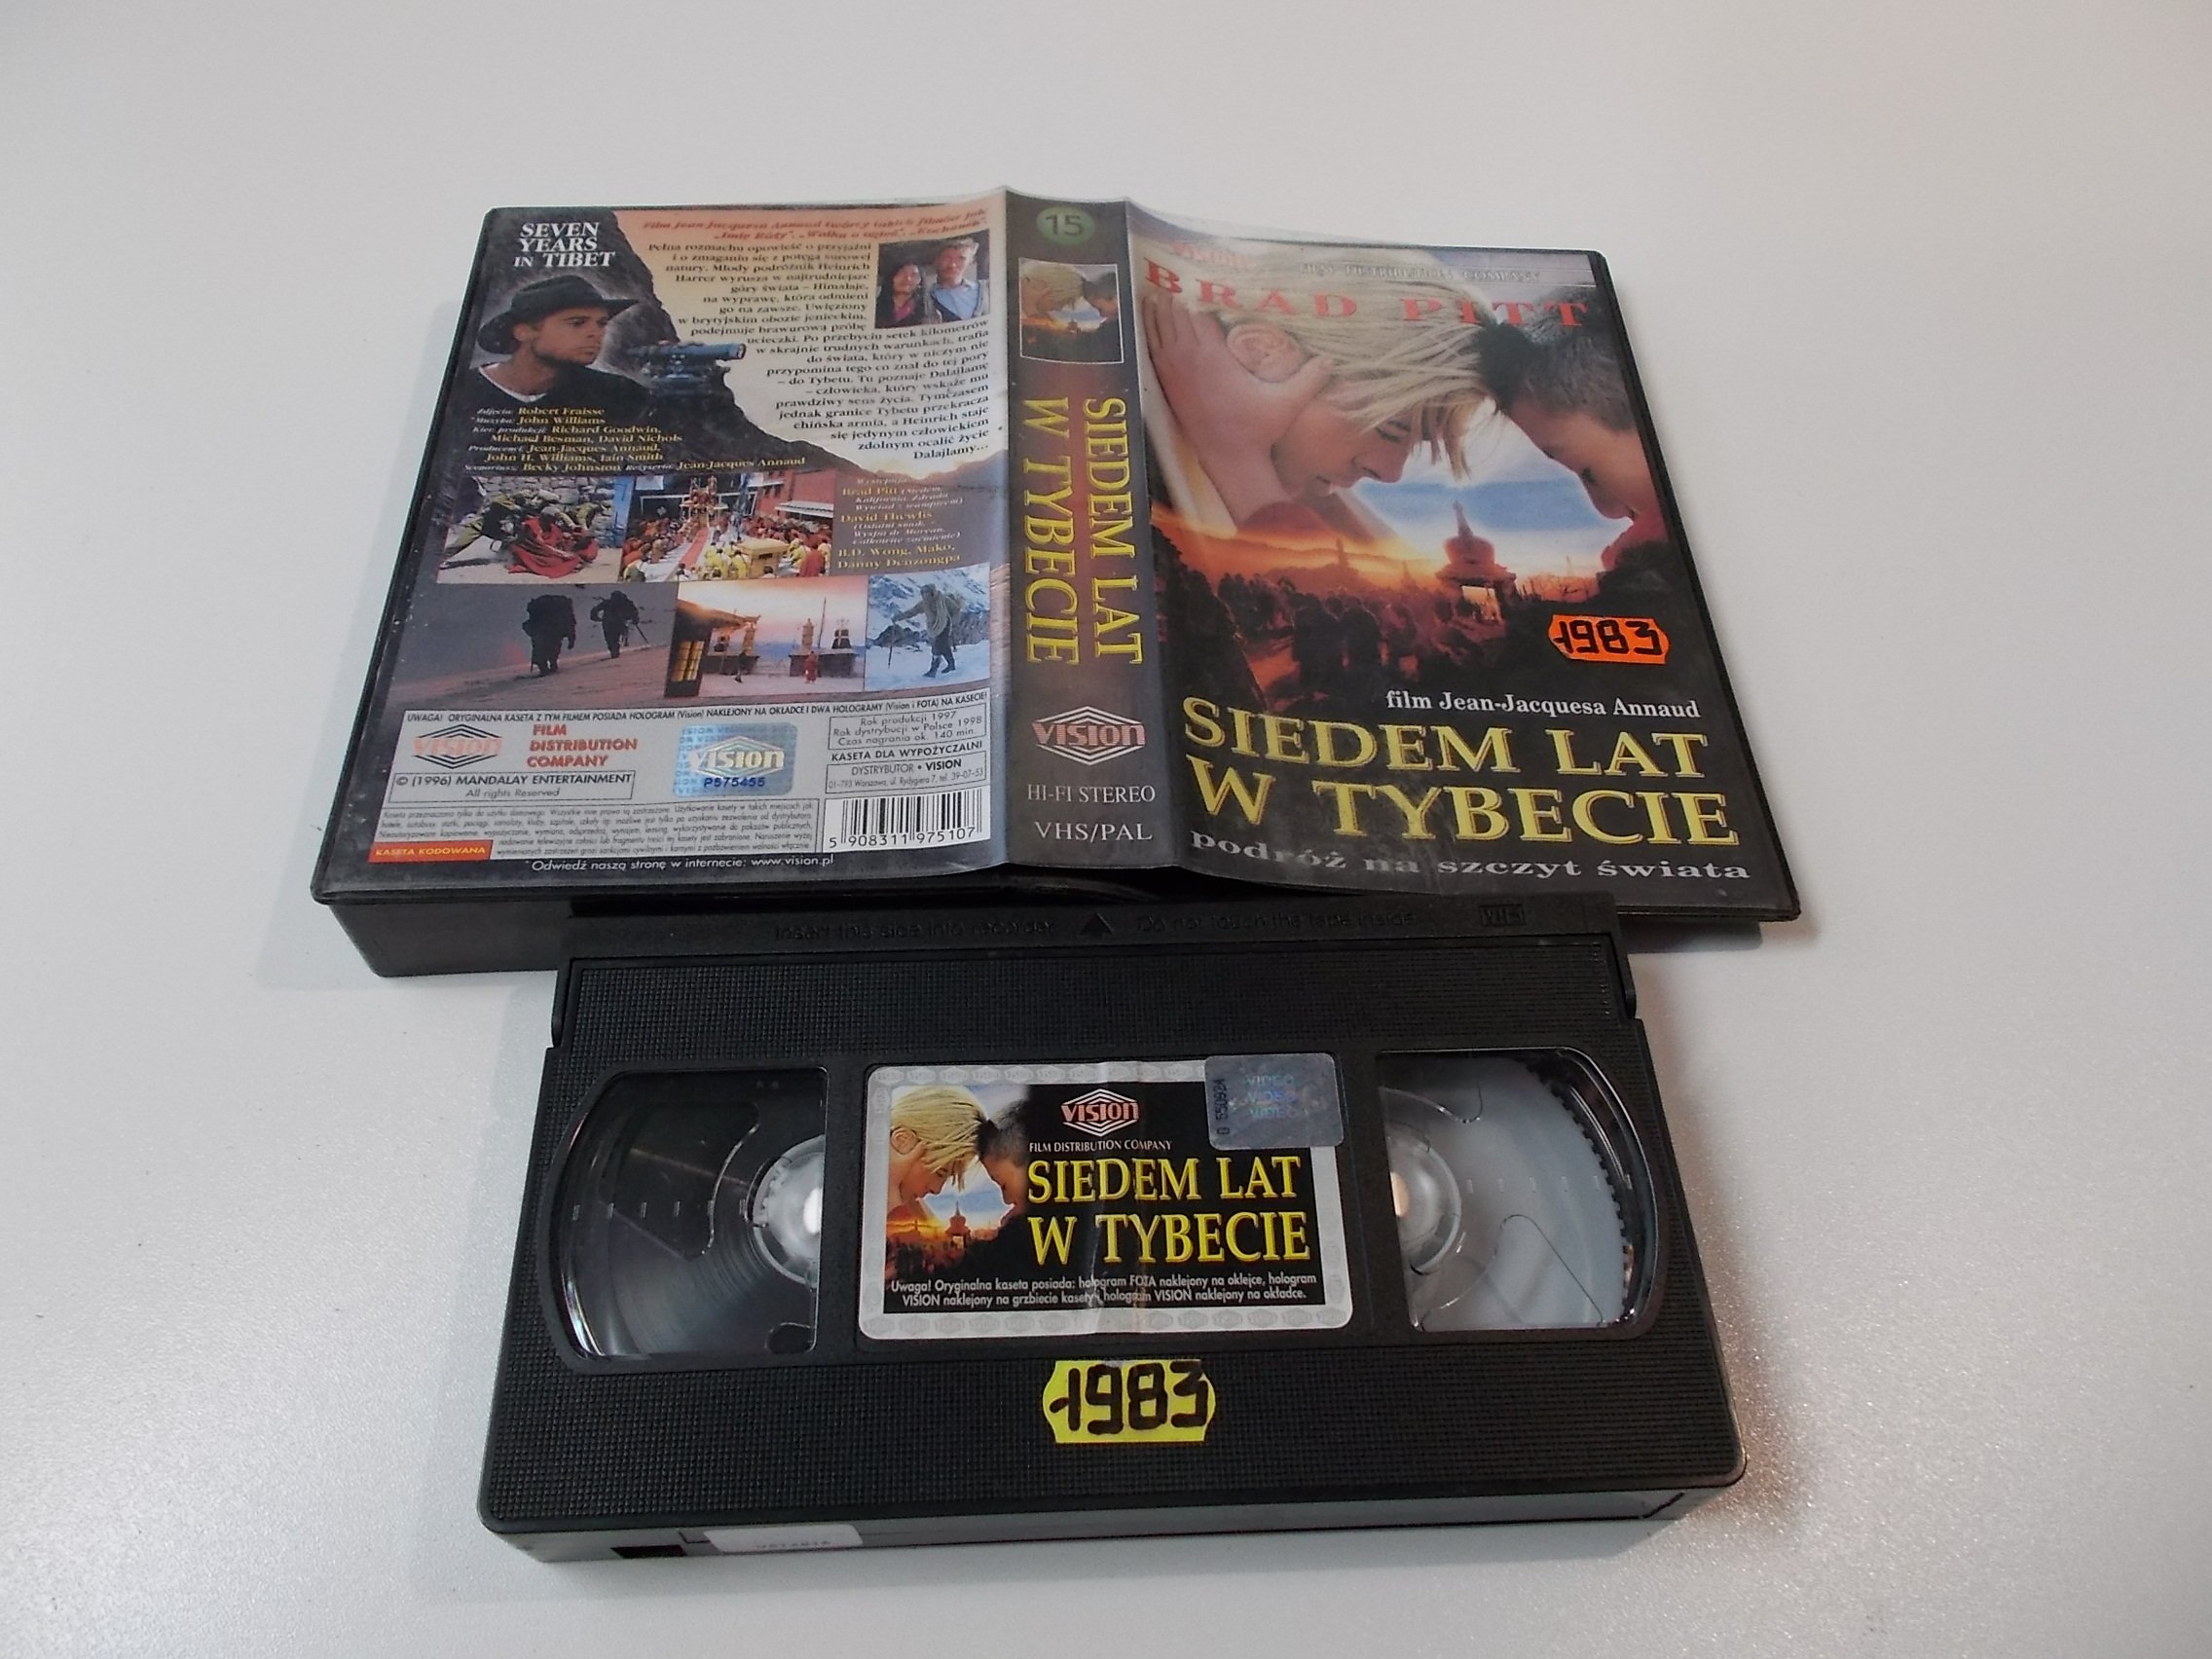 SIEDEM LAT W TYBECIE - Kaseta Video VHS - Opole 1576